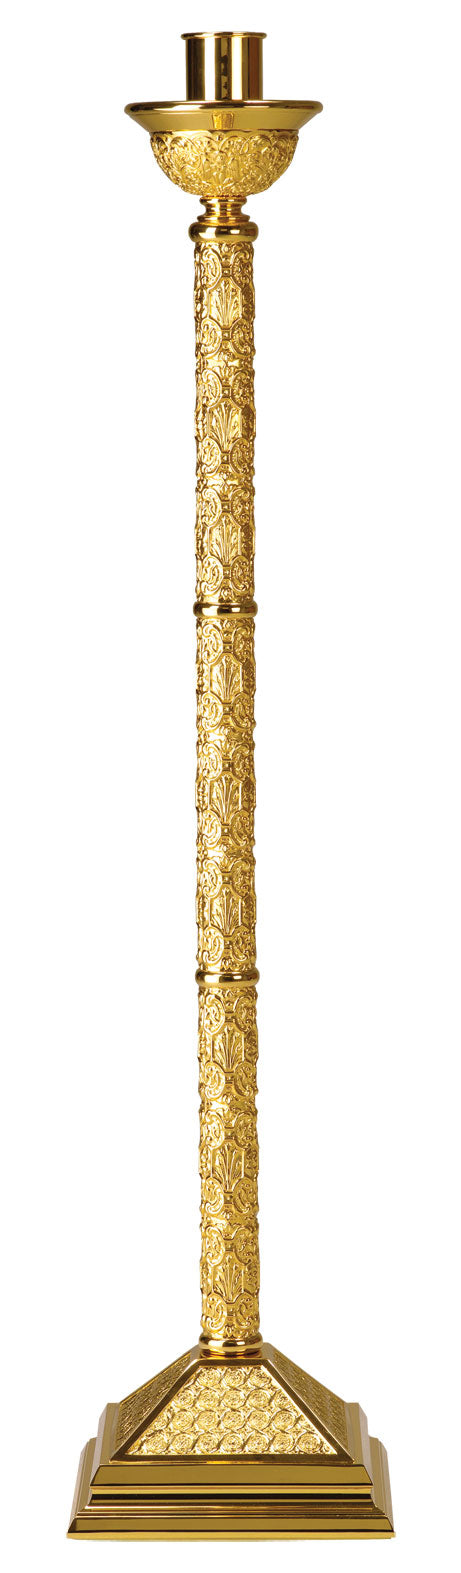 gold-plated-paschal-candlestick-950.jpg